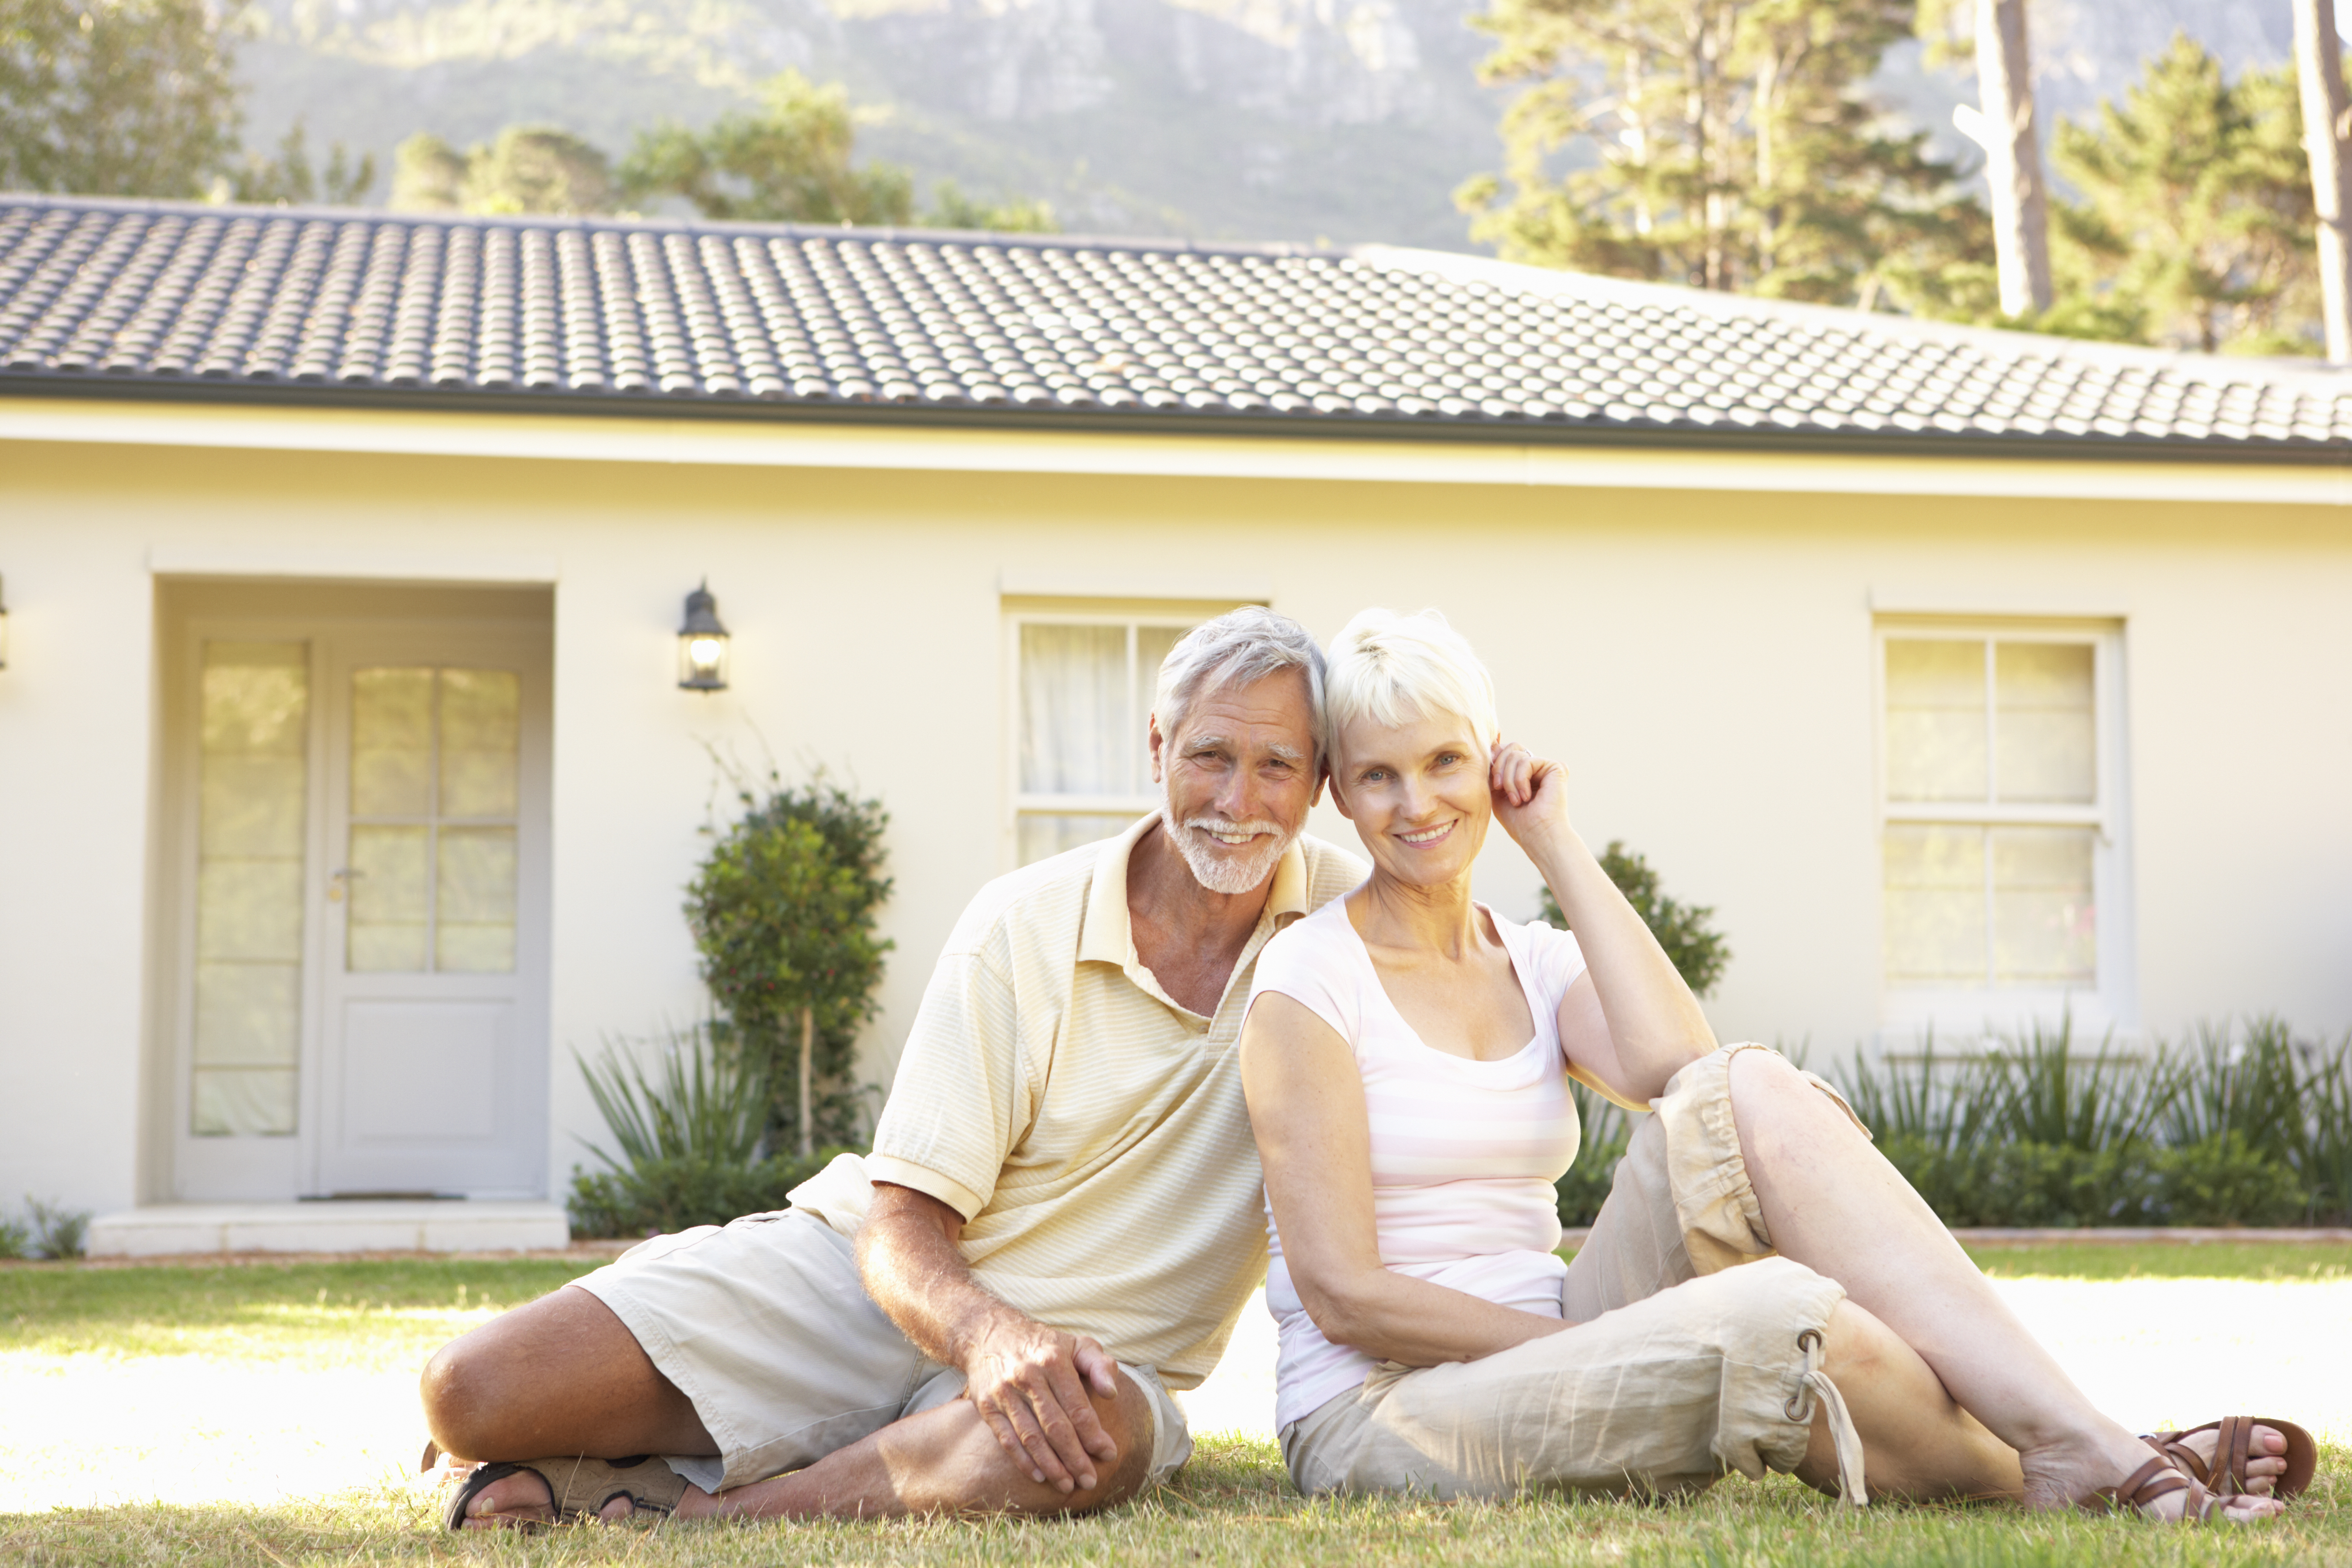 Das Symbolbild zeigt ein älteres Ehepaar vor einem Einfamilienhaus.